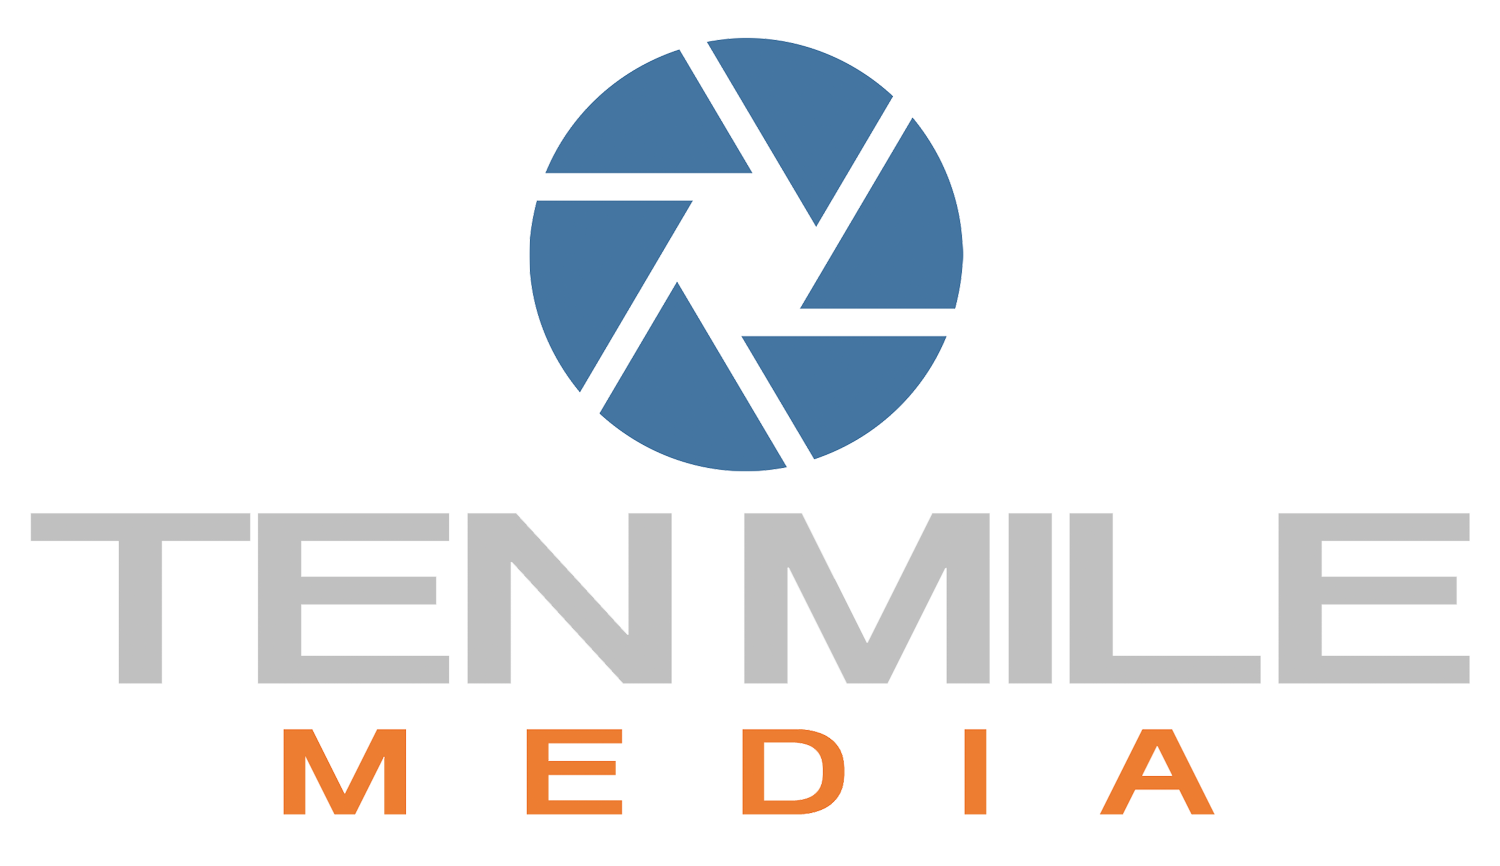 Ten Mile Media